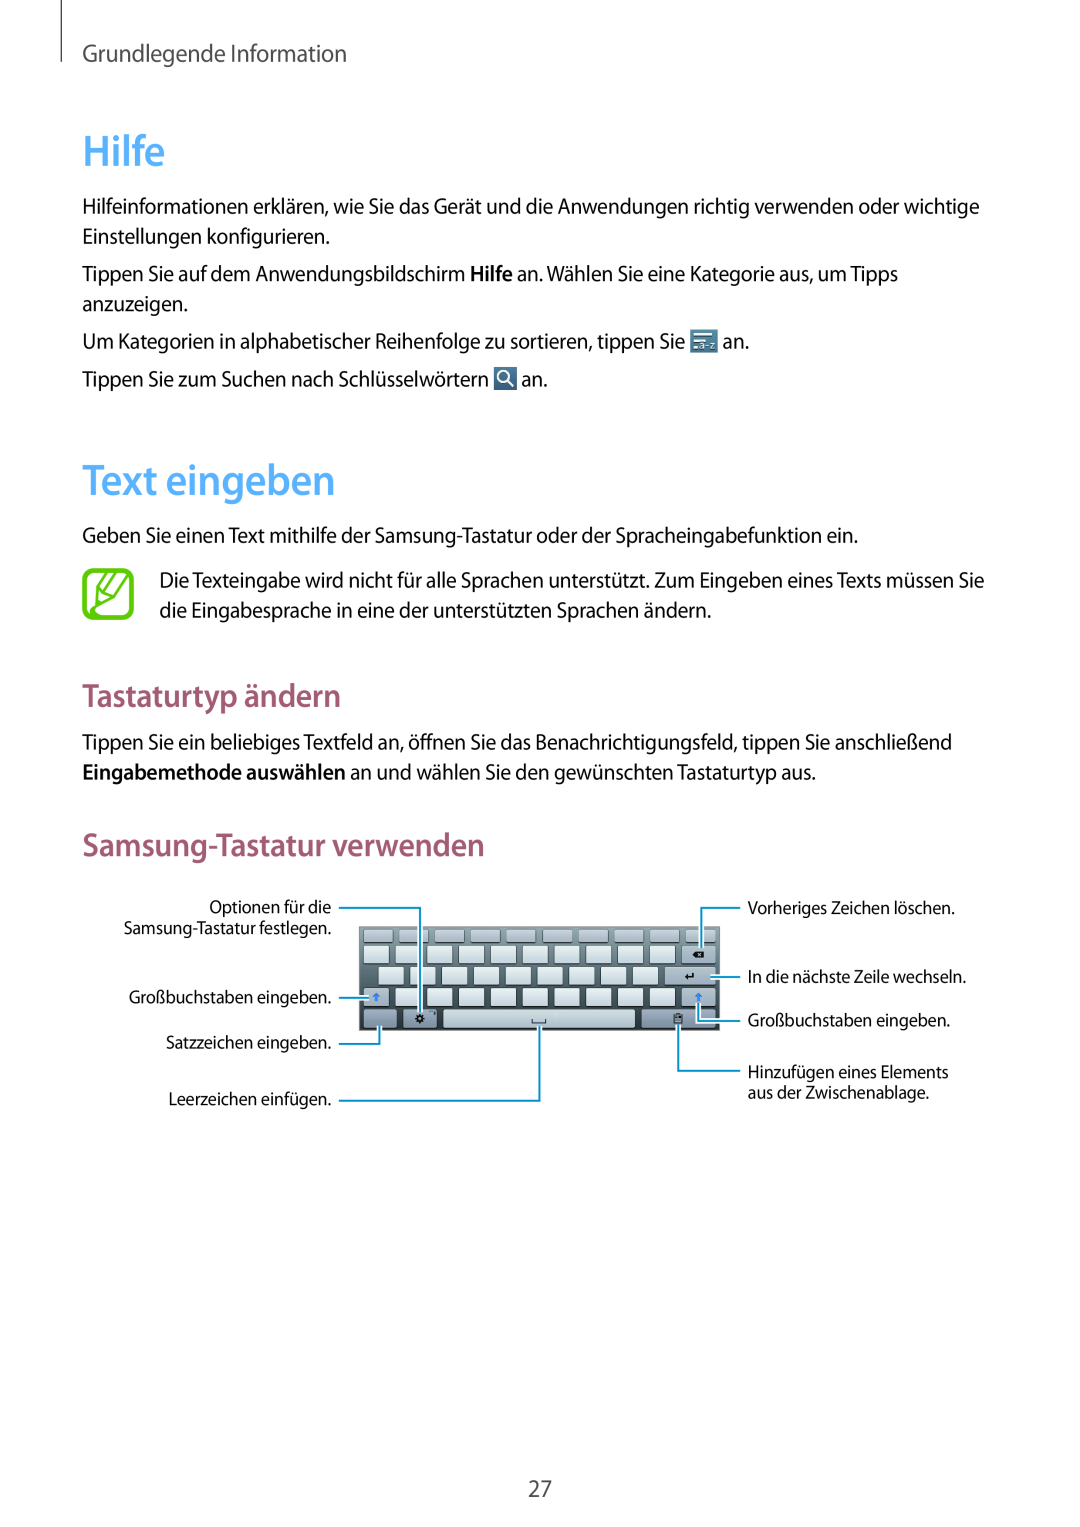 Samsung GT-P5220ZWADTM Hilfe, Text eingeben, Tastaturtyp ändern, Samsung-Tastatur verwenden, Grundlegende Information 